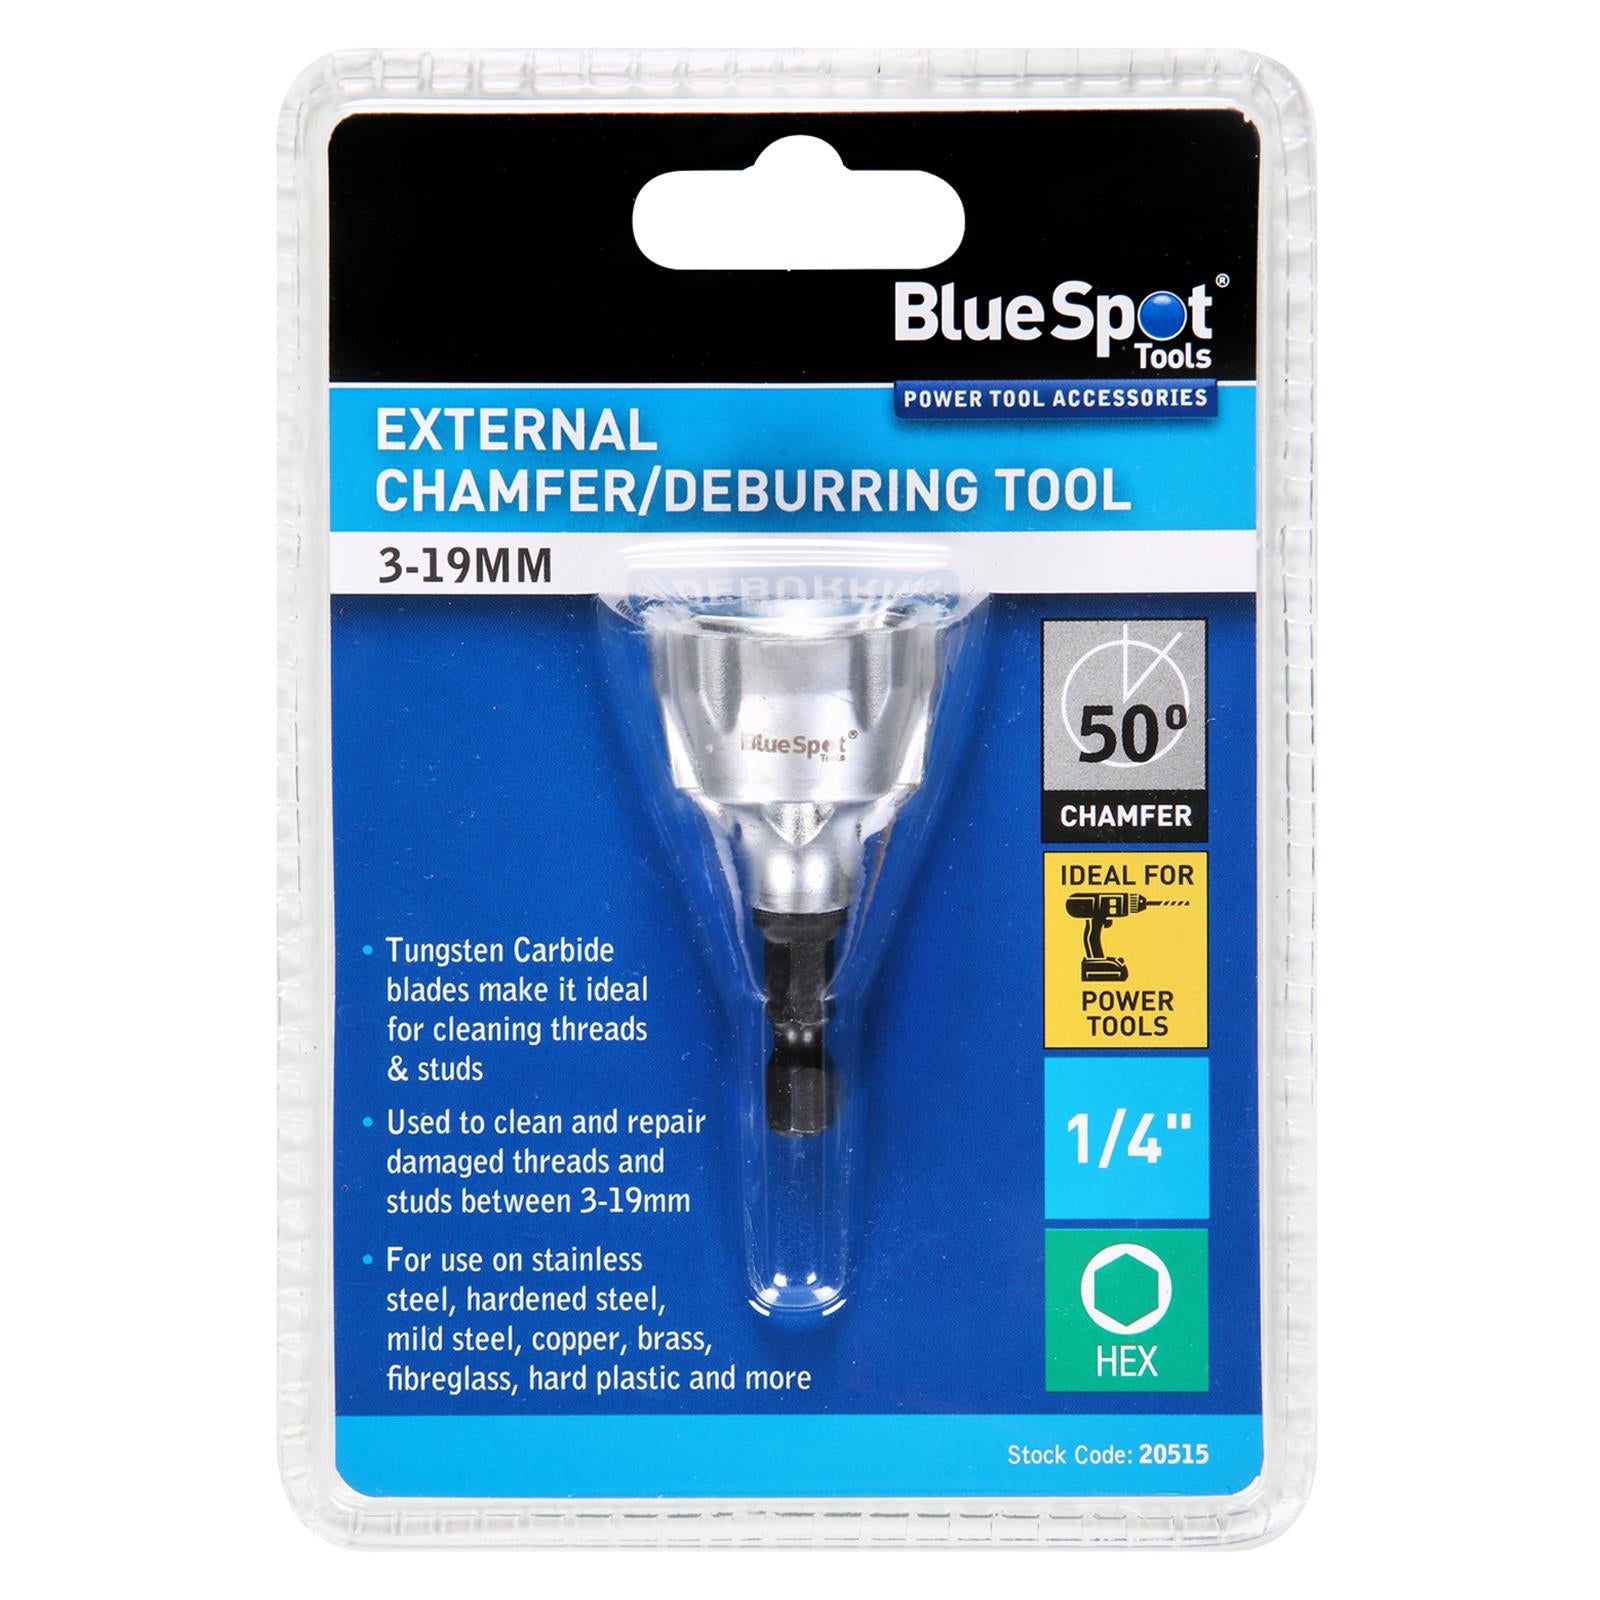 BlueSpot External Chamfer Deburring Tool 3-19mm